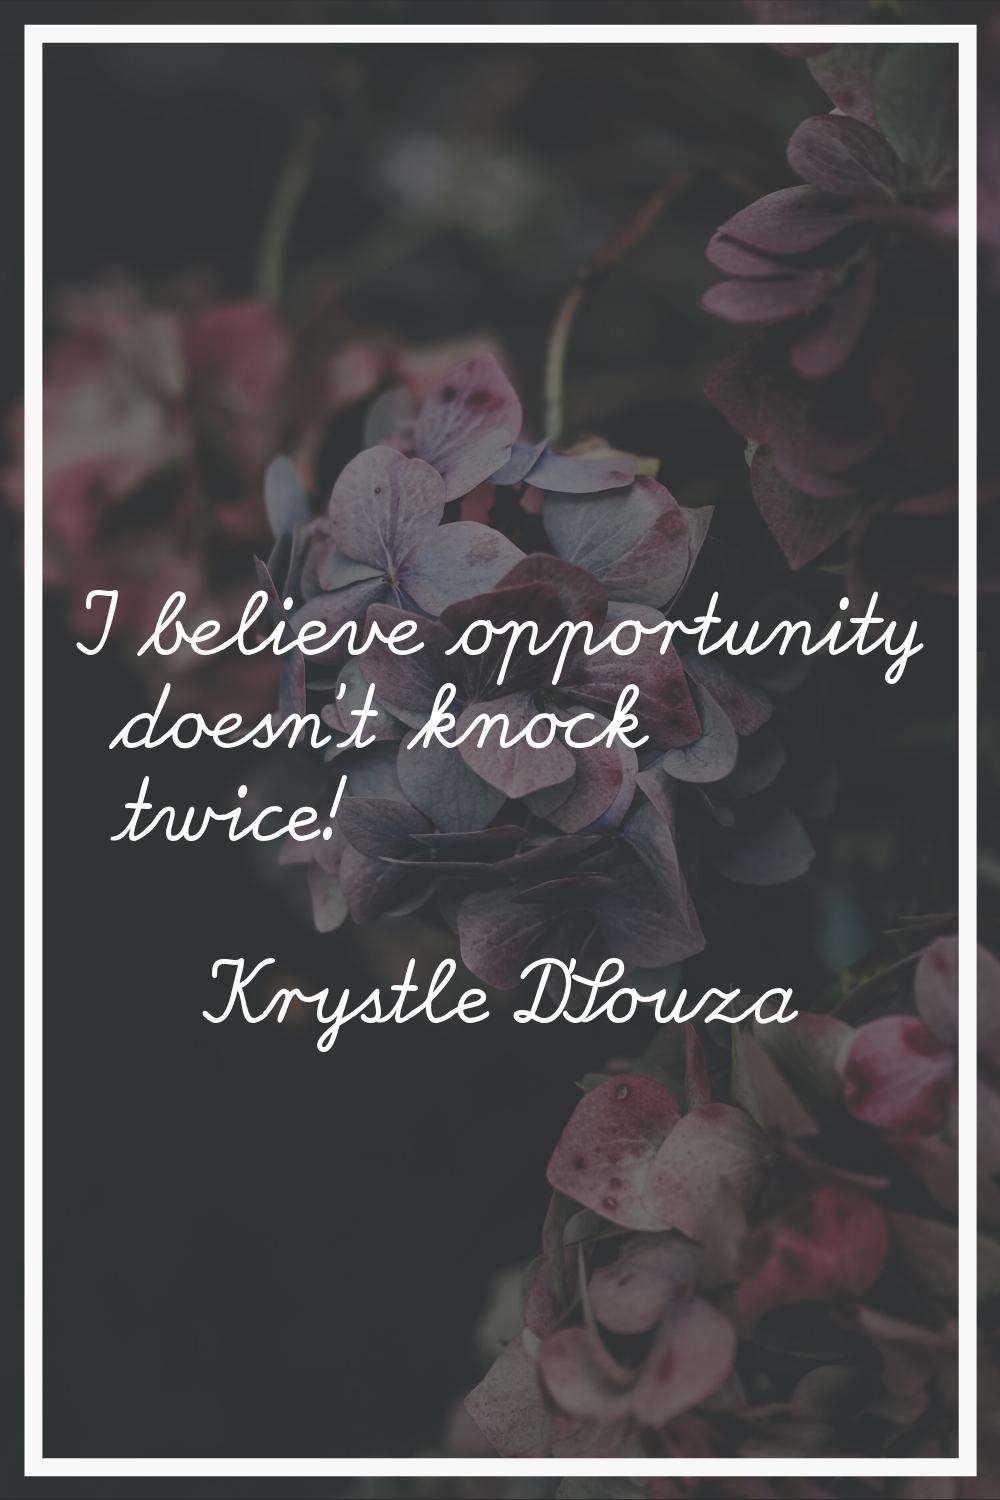 I believe opportunity doesn't knock twice!